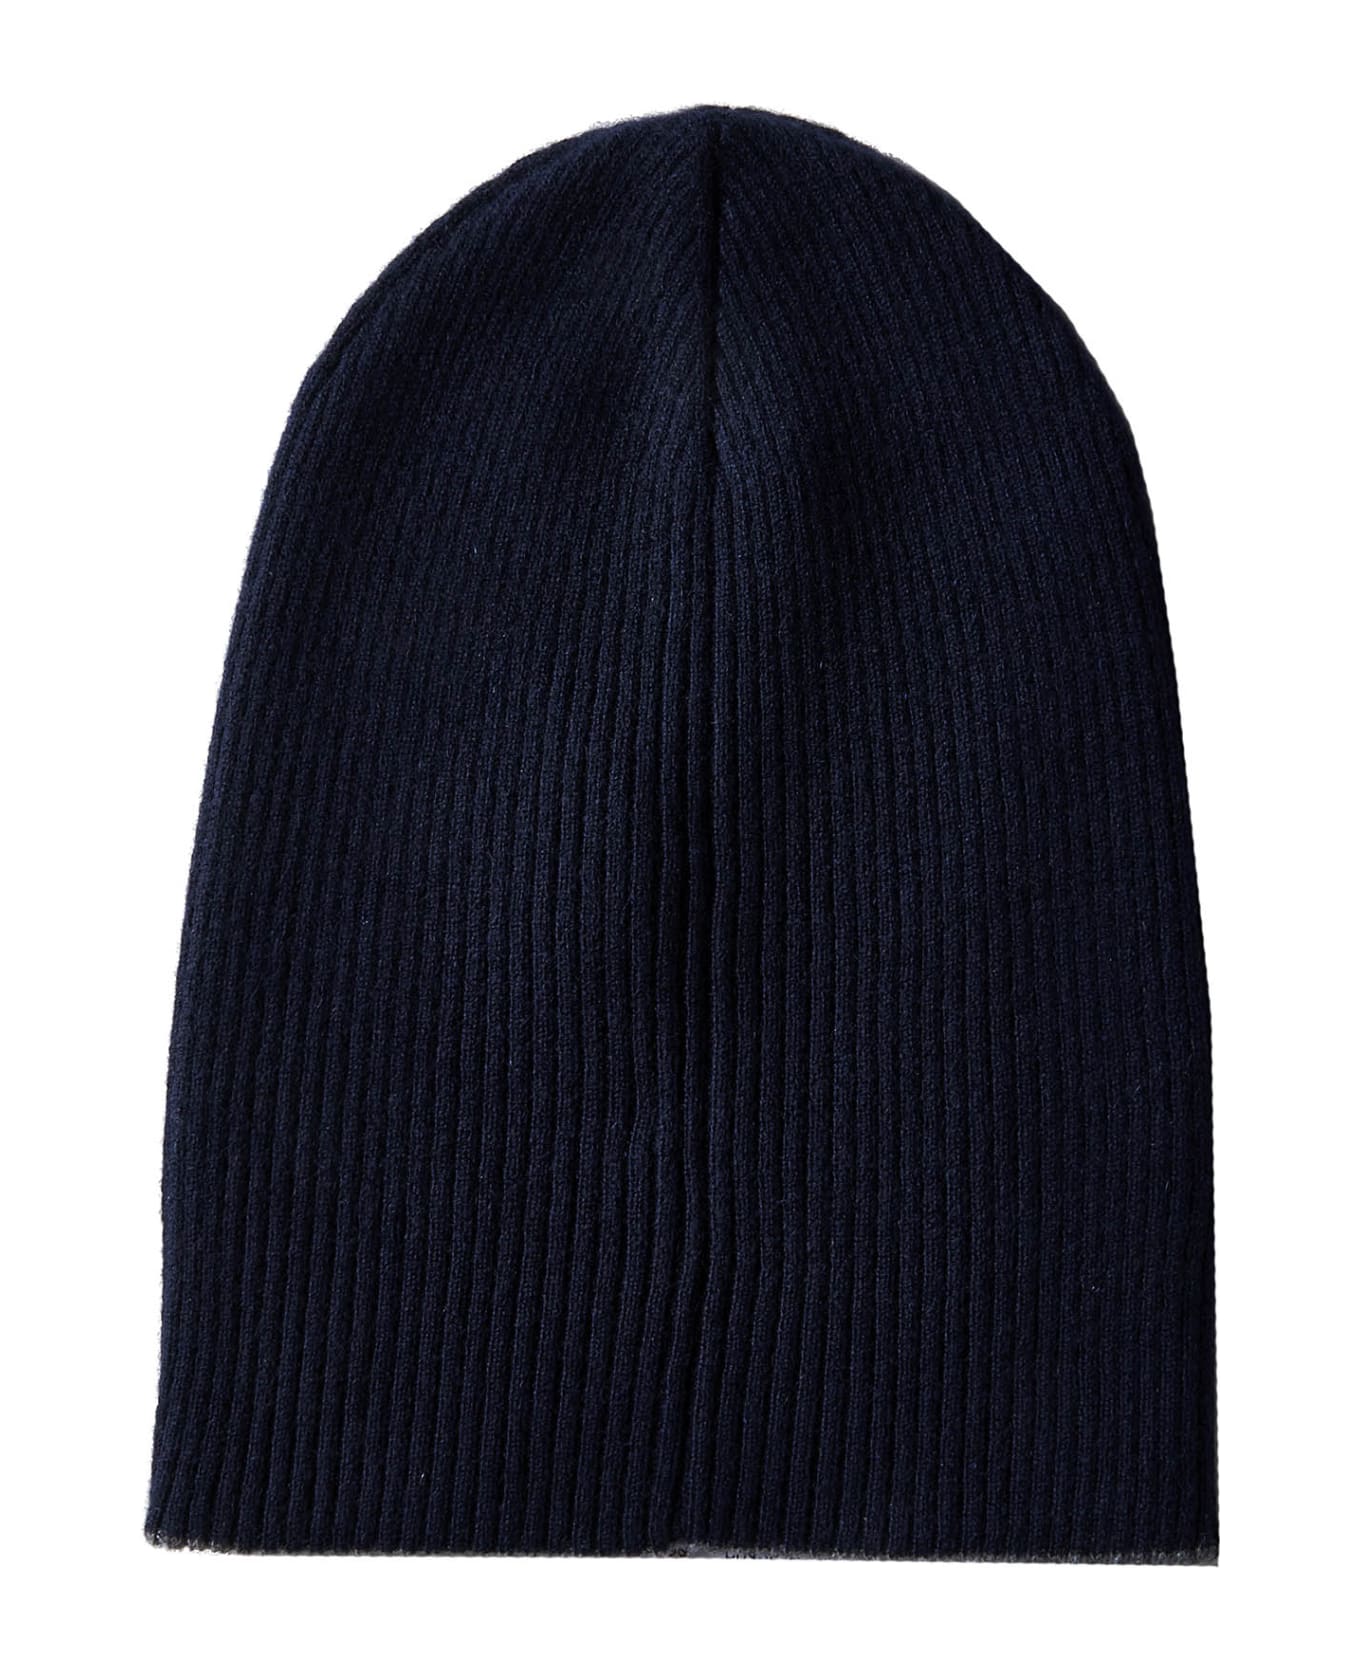 Brunello Cucinelli Cashmere Beanie Hat - Blue Navy 帽子